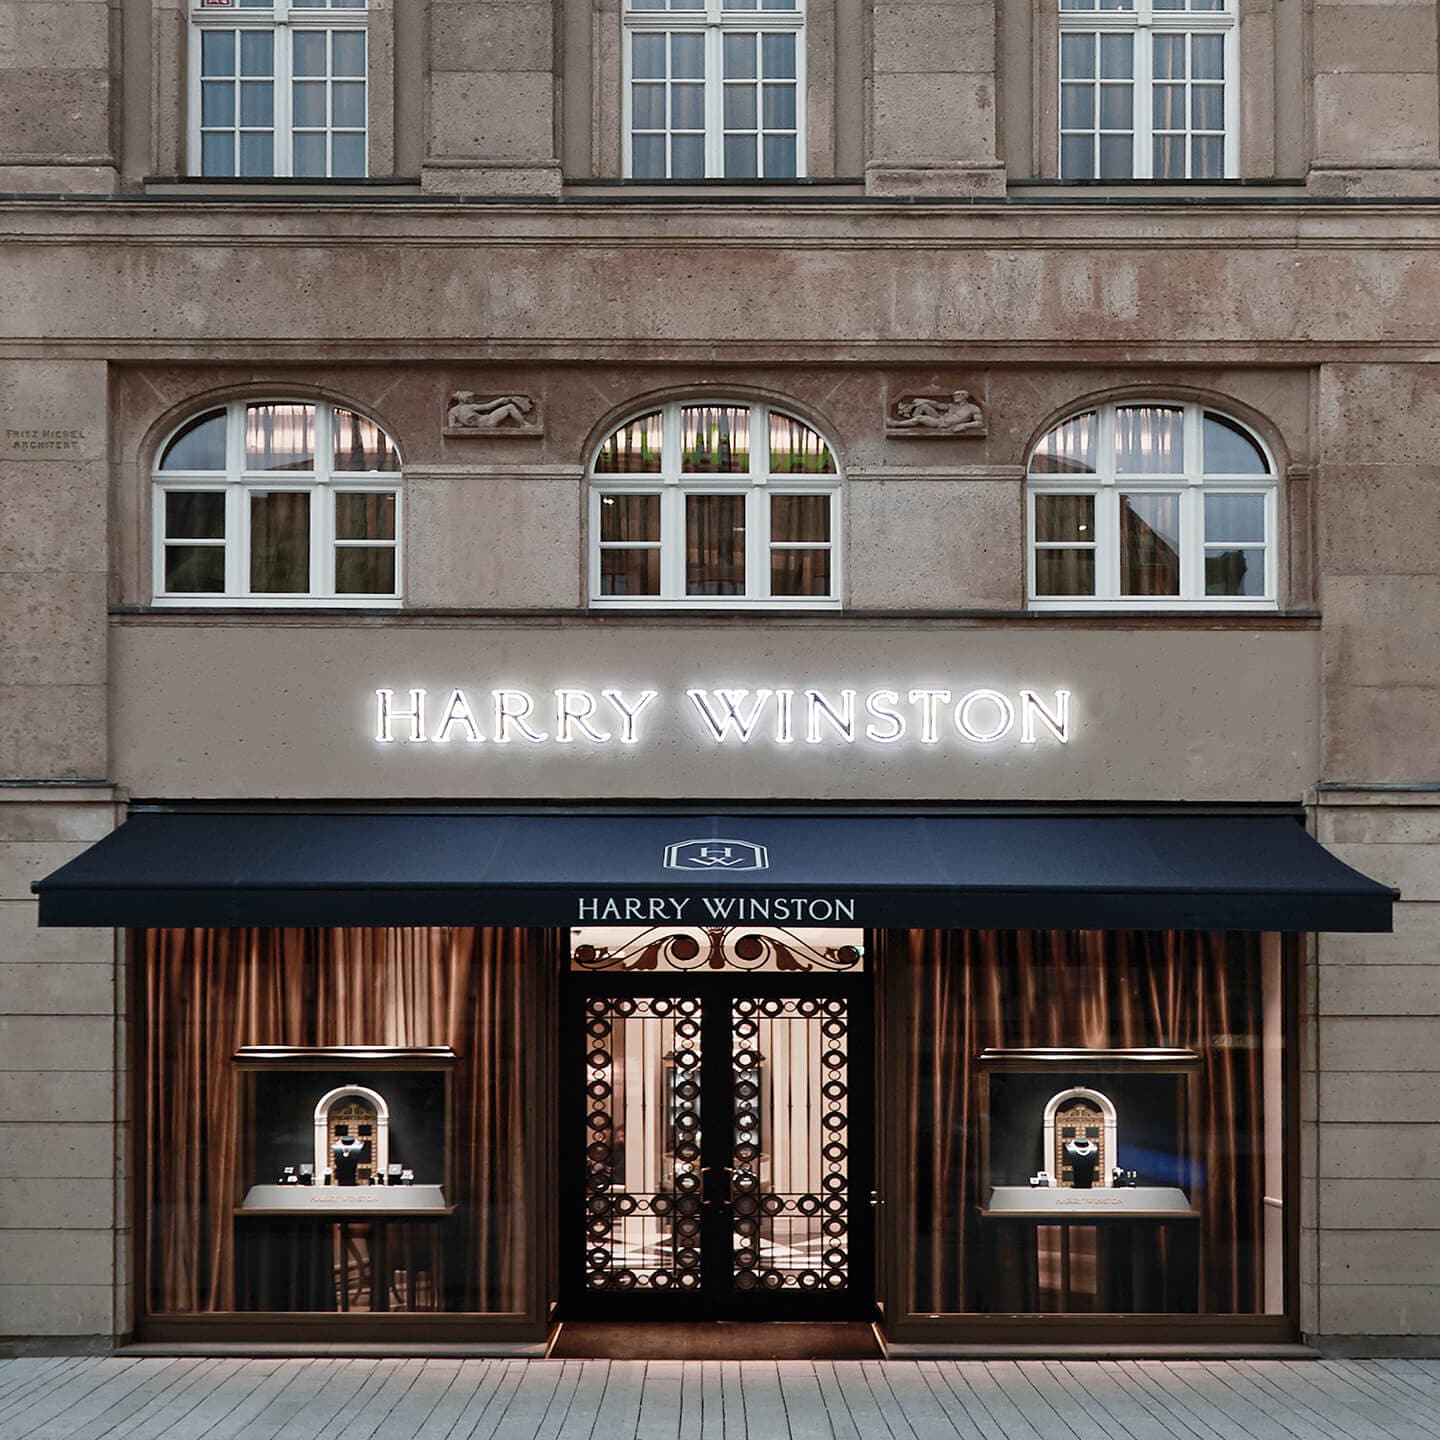 Façade of the Harry Winston Düsseldorf Salon